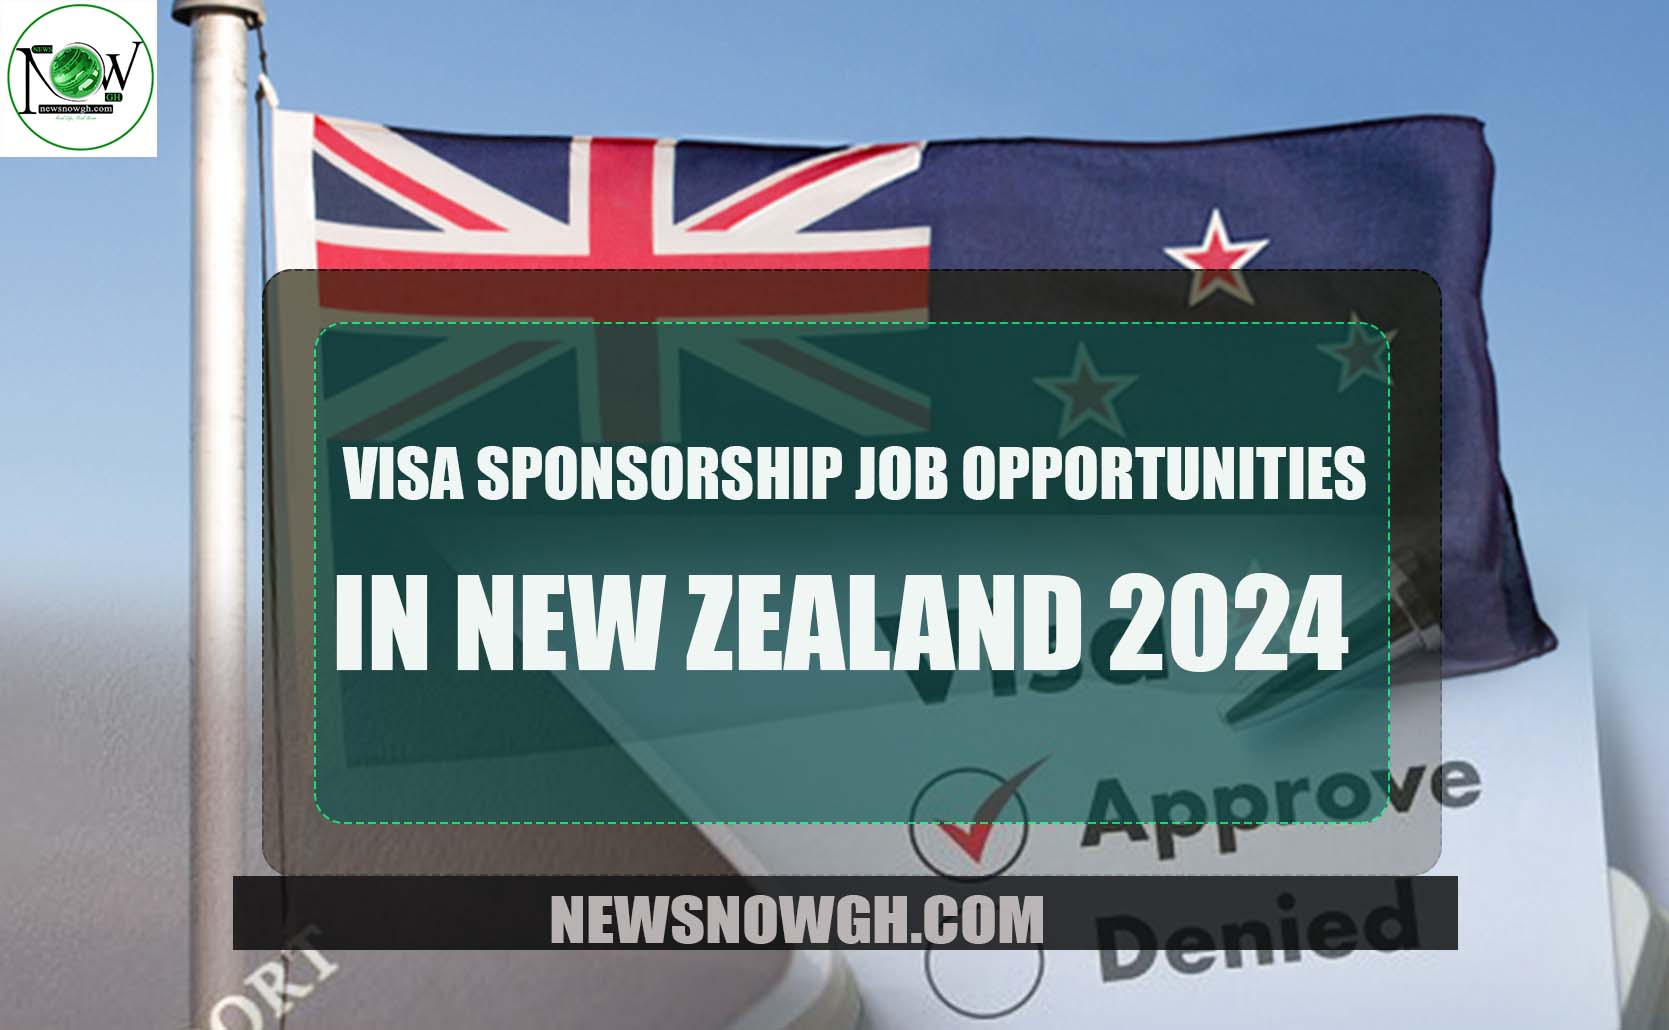 Visa Sponsorship Job Opportunities in New Zealand 2024